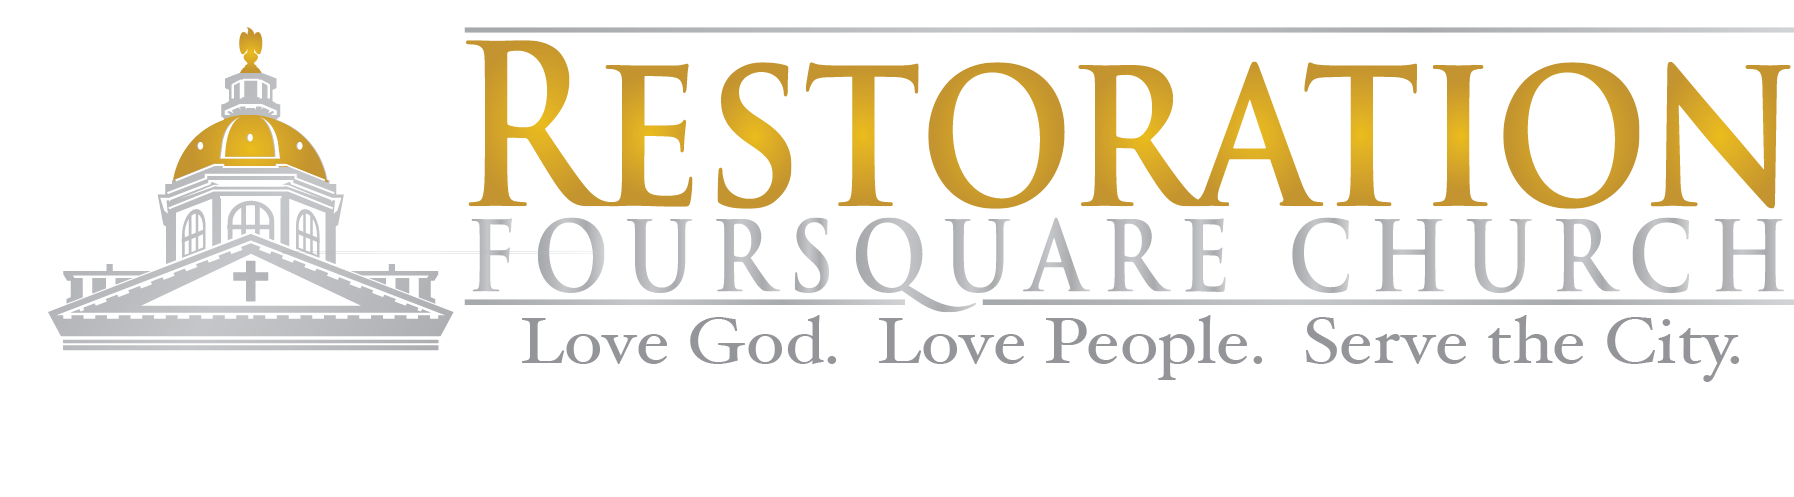 Restoration Foursquare Church  